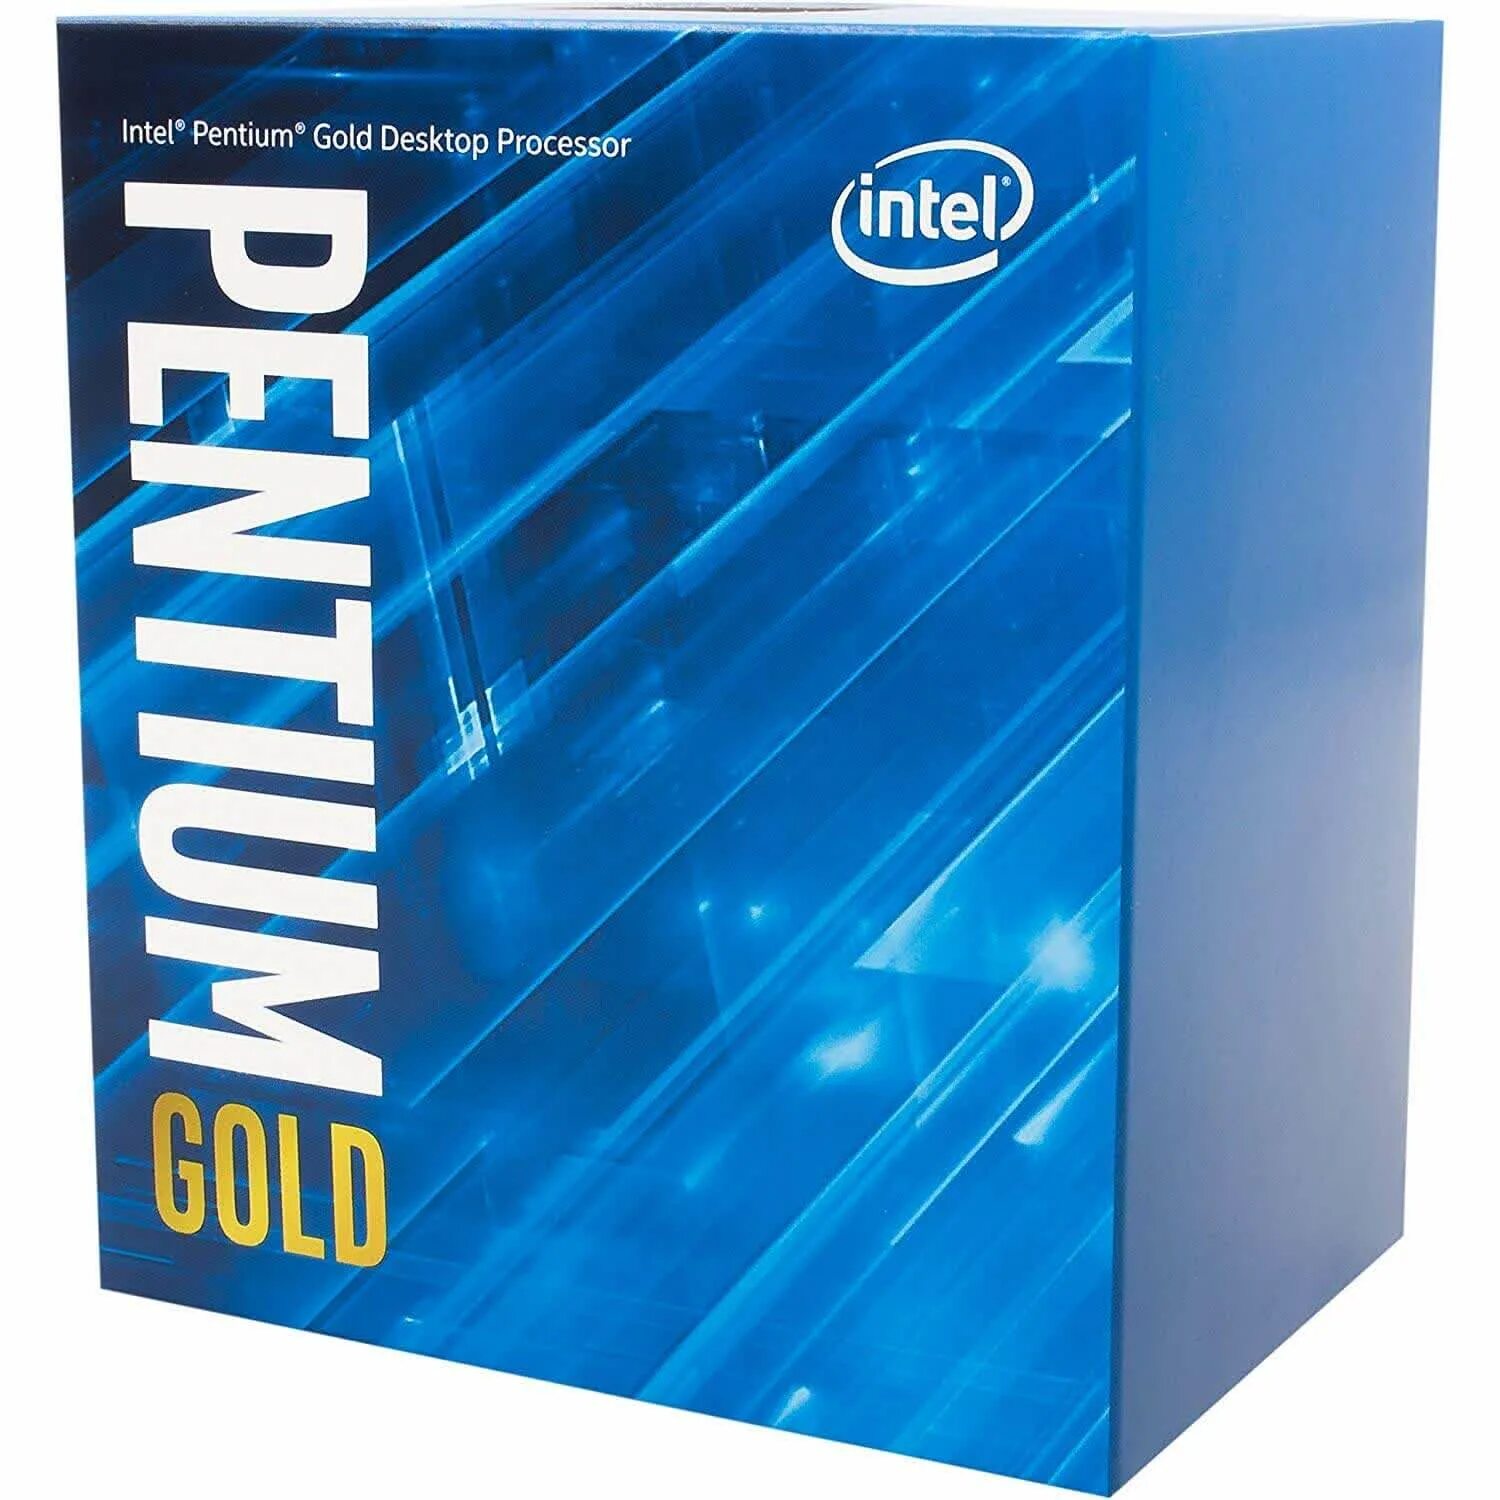 Pentium gold характеристики. Процессор Intel Pentium Gold g6405. Процессор Intel Pentium Gold g5400. Компьютер Intel Pentium Gold g5400. Процессор Intel Pentium Gold g6405 OEM.